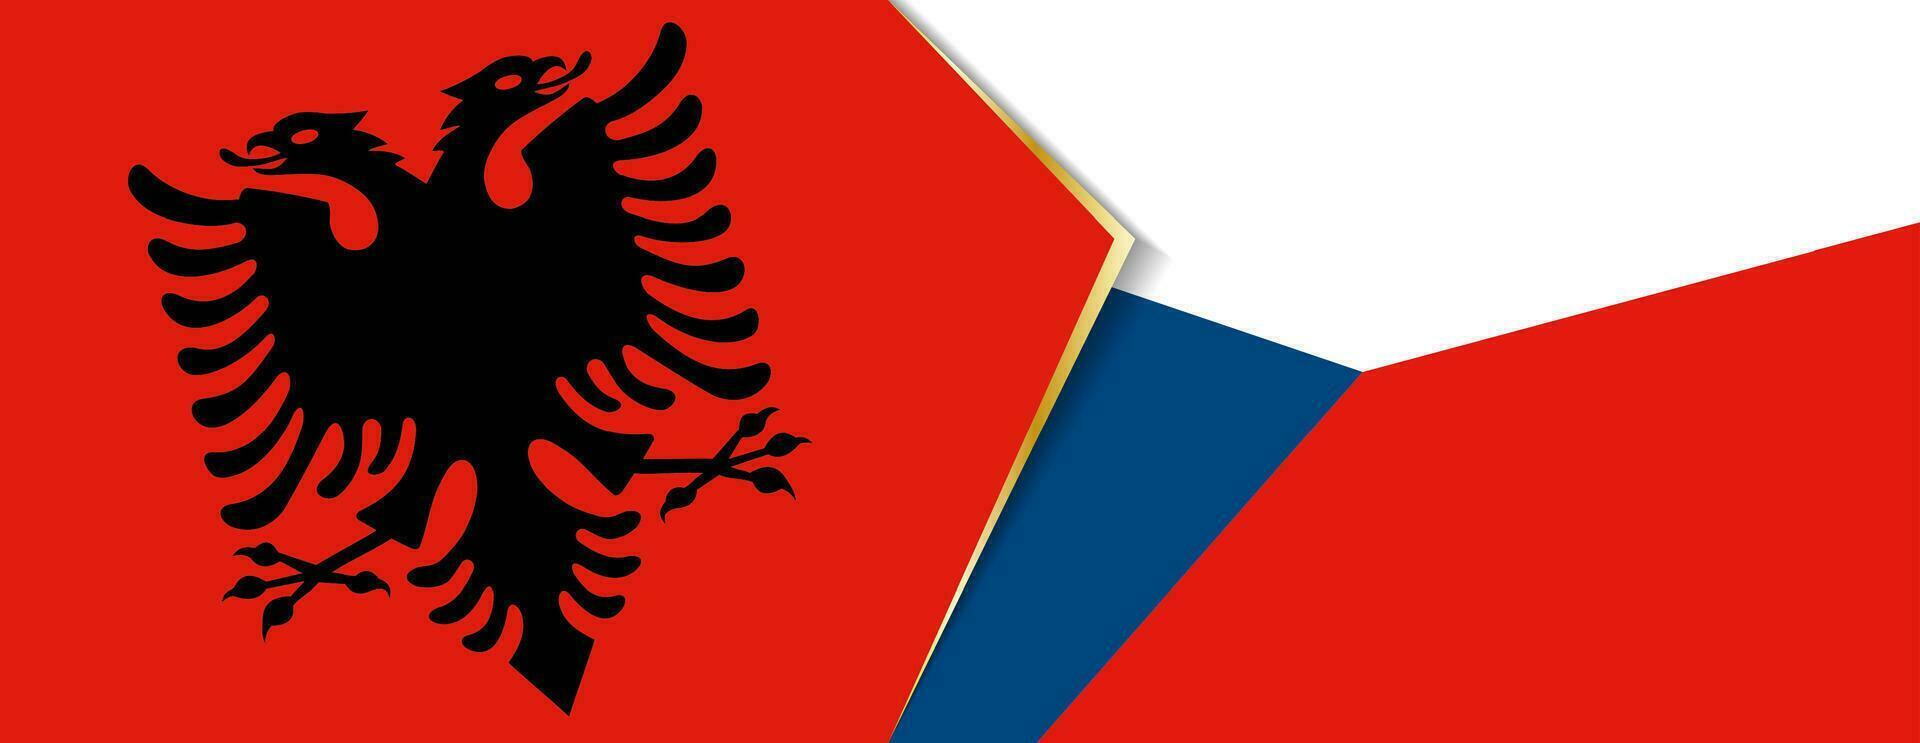 Albanien und Tschechisch Republik Flaggen, zwei Vektor Flaggen.